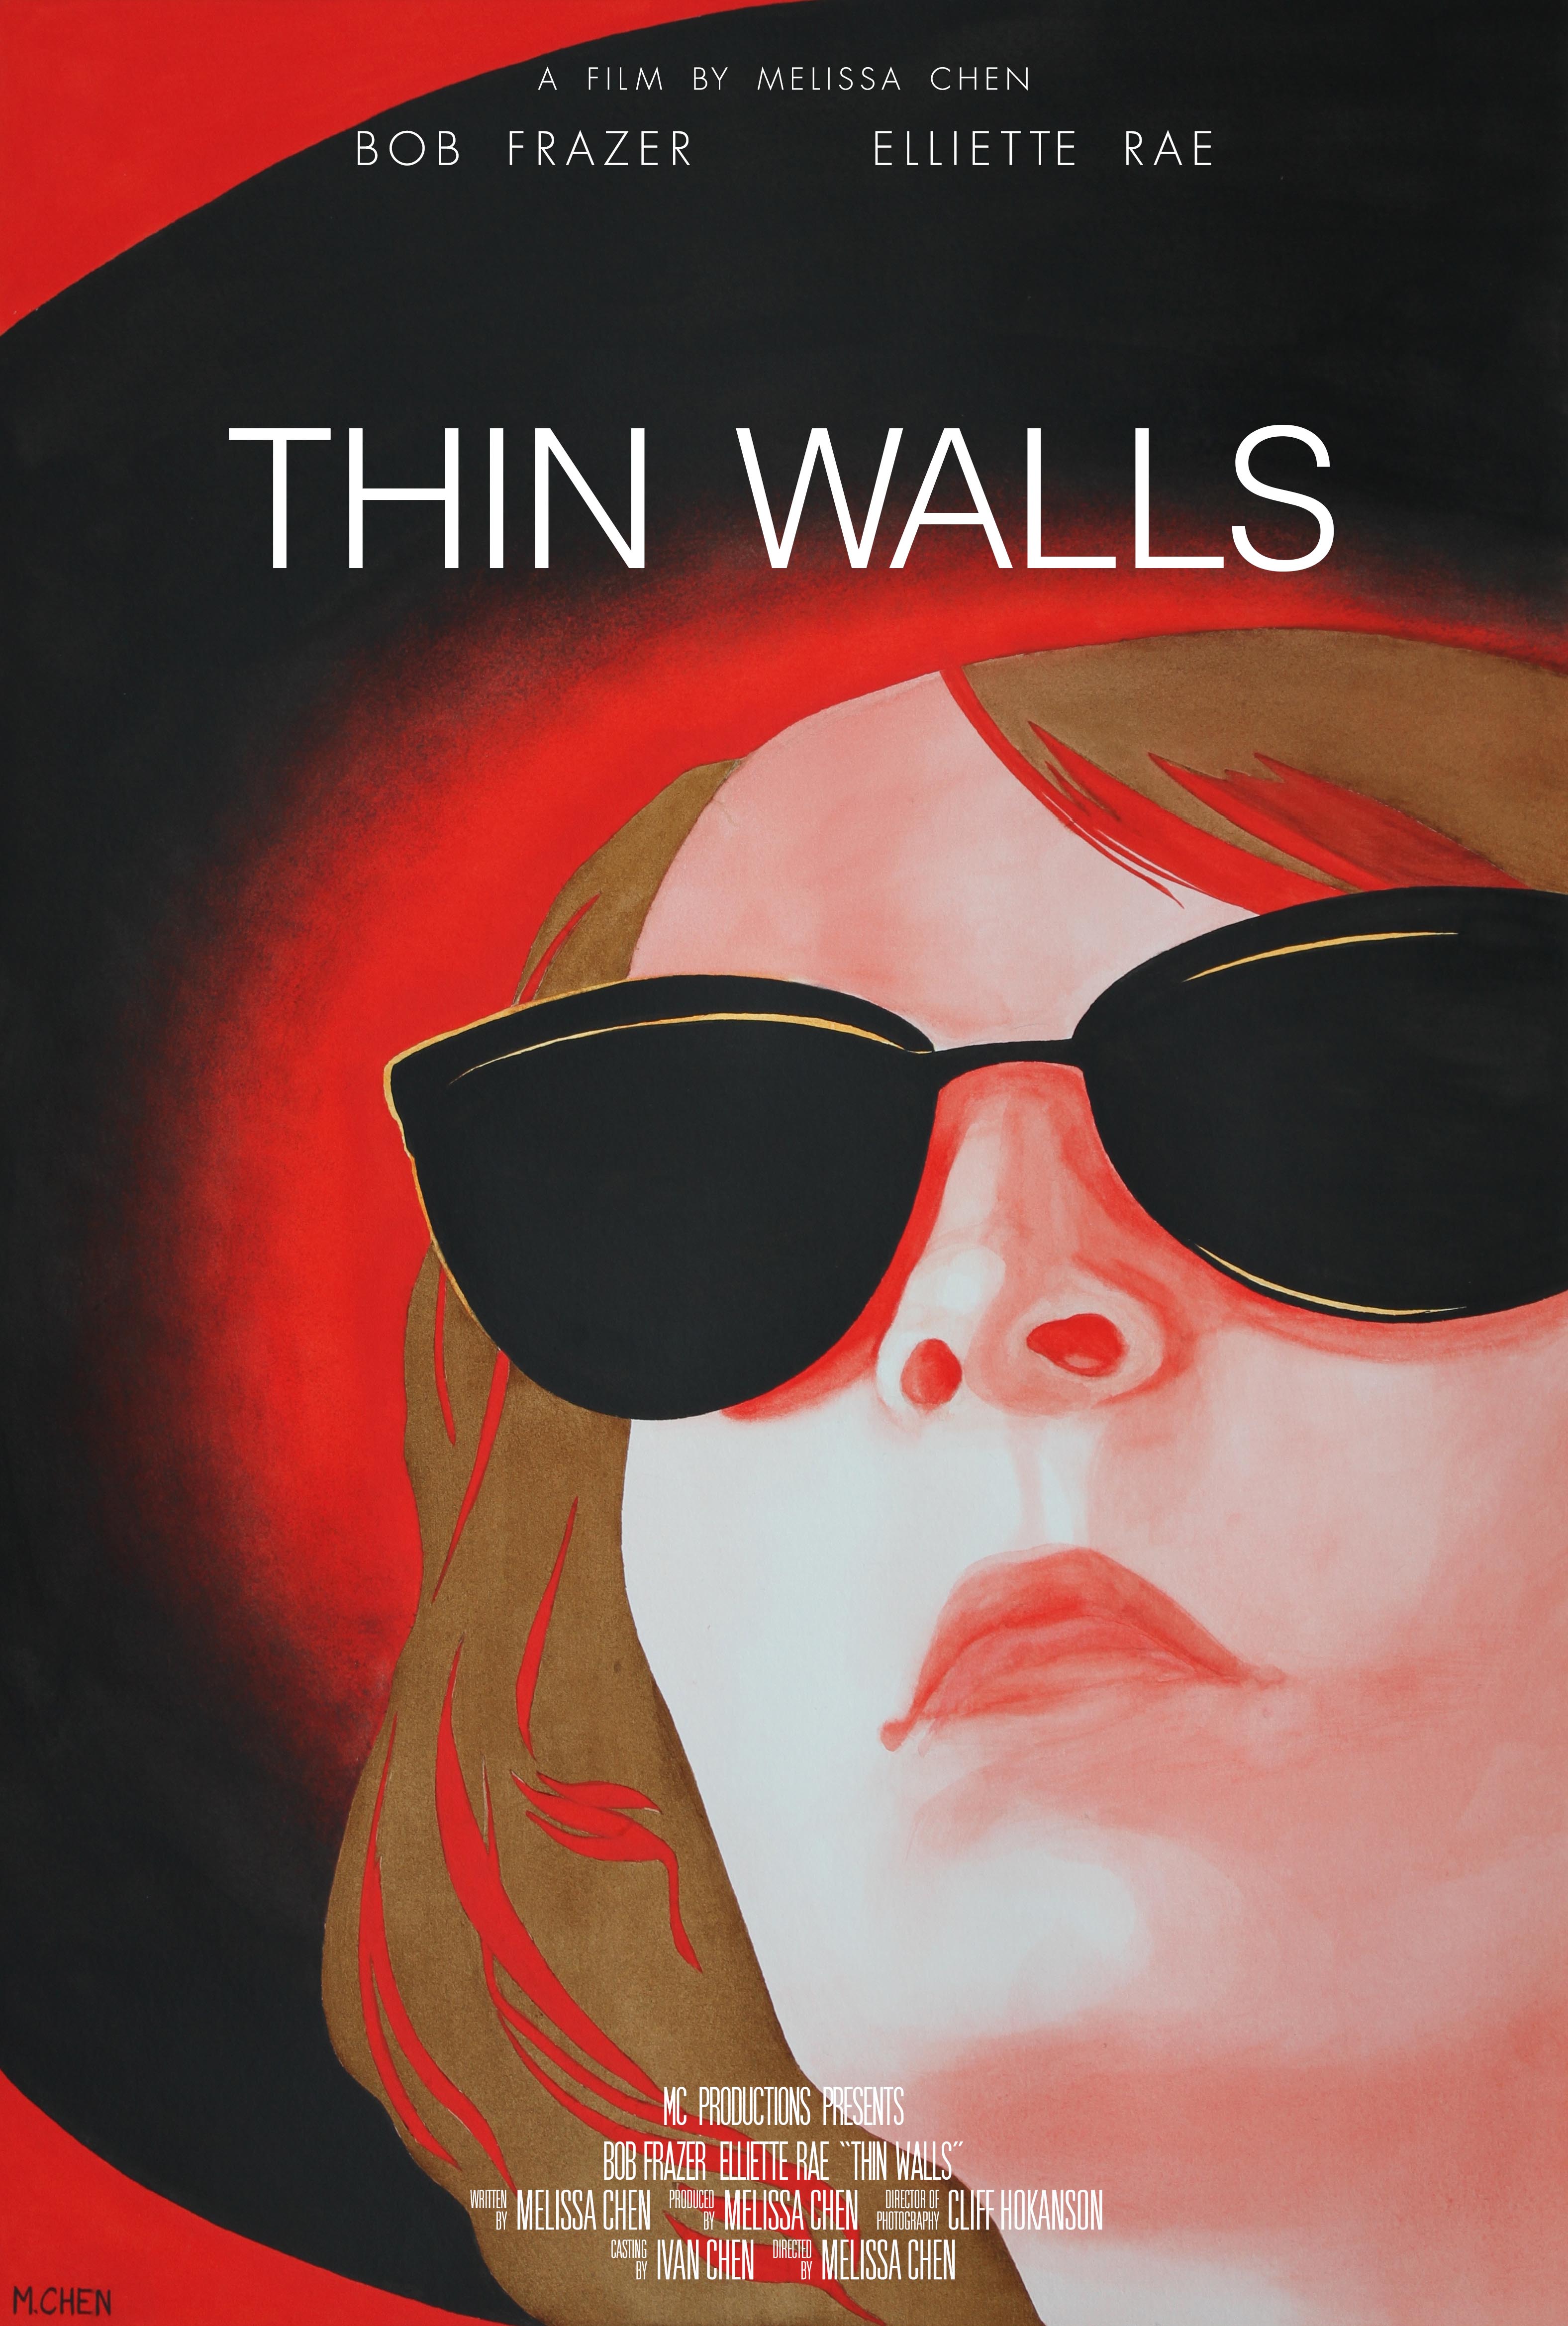 melissa chen short film thin walls poster